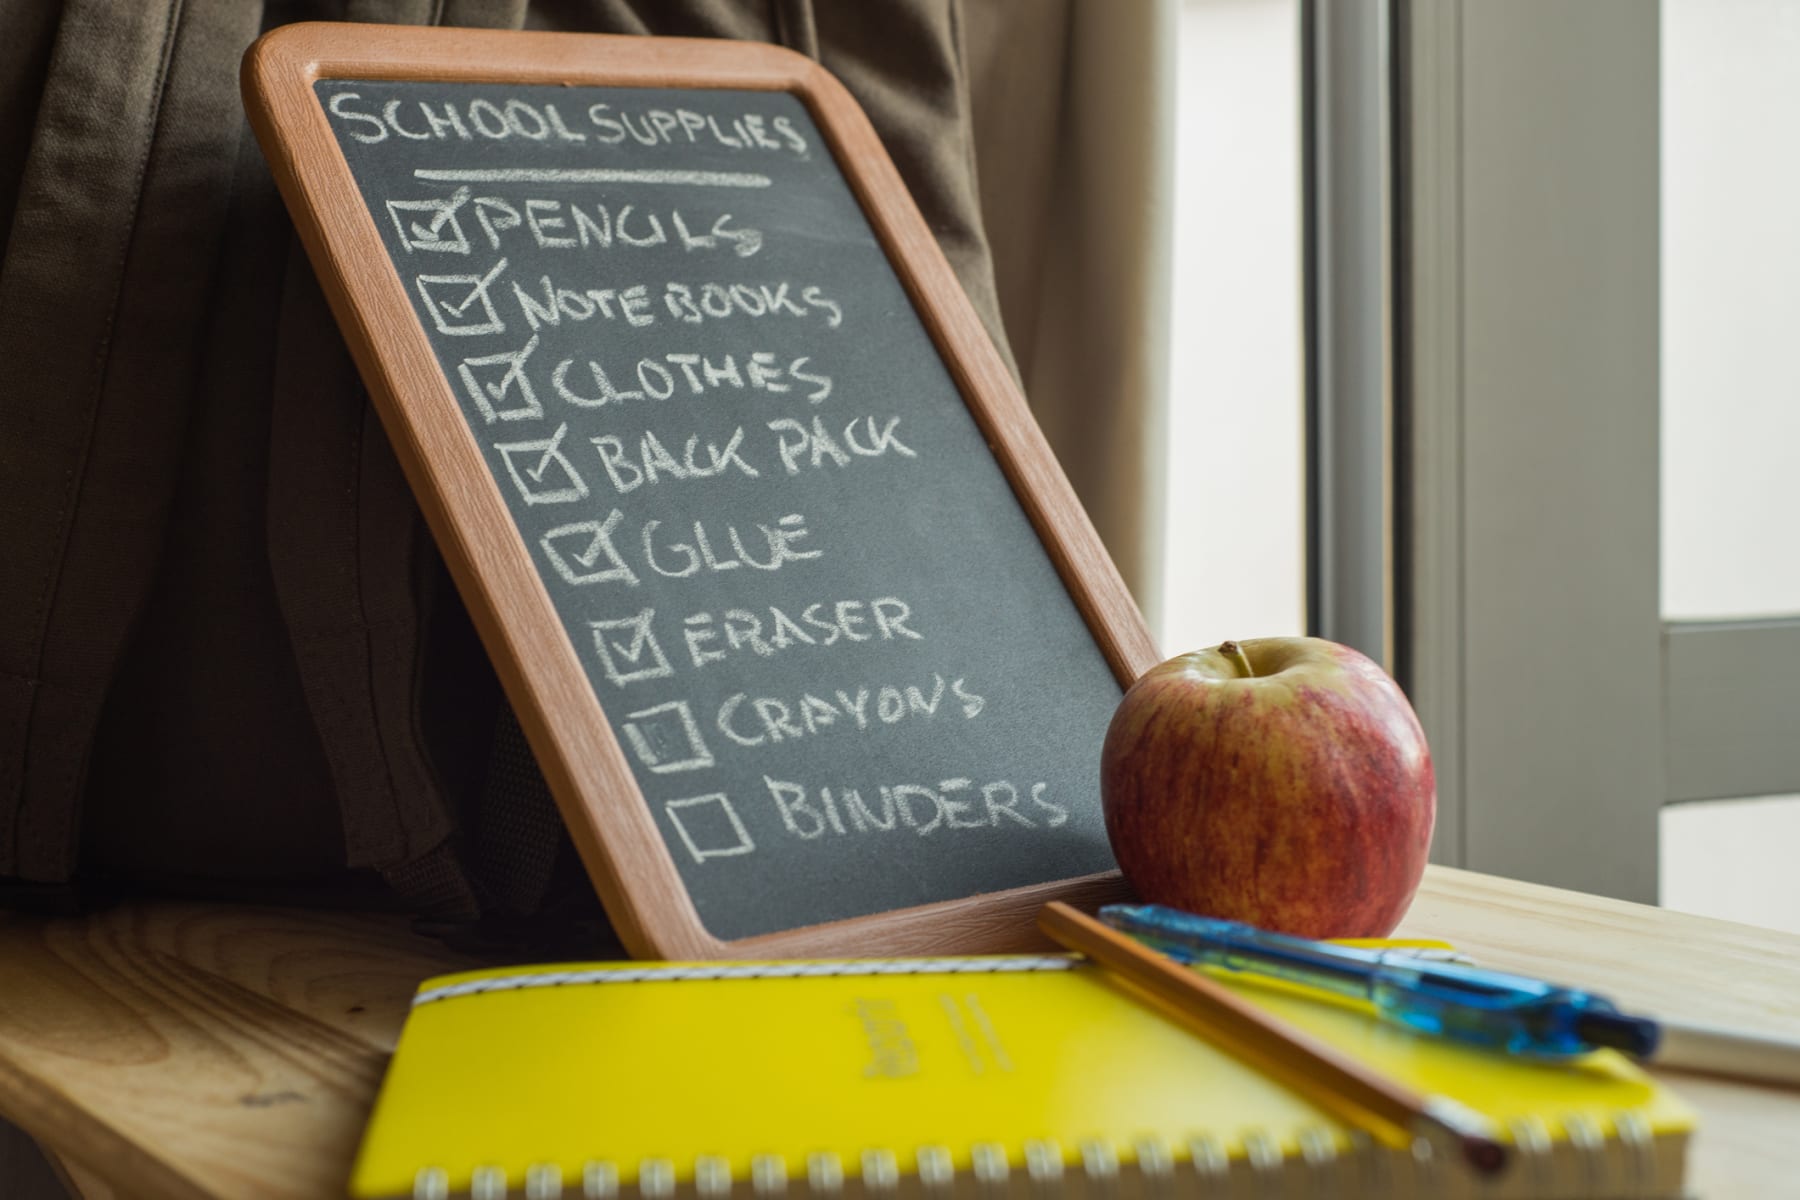 school supply list on chalkboard